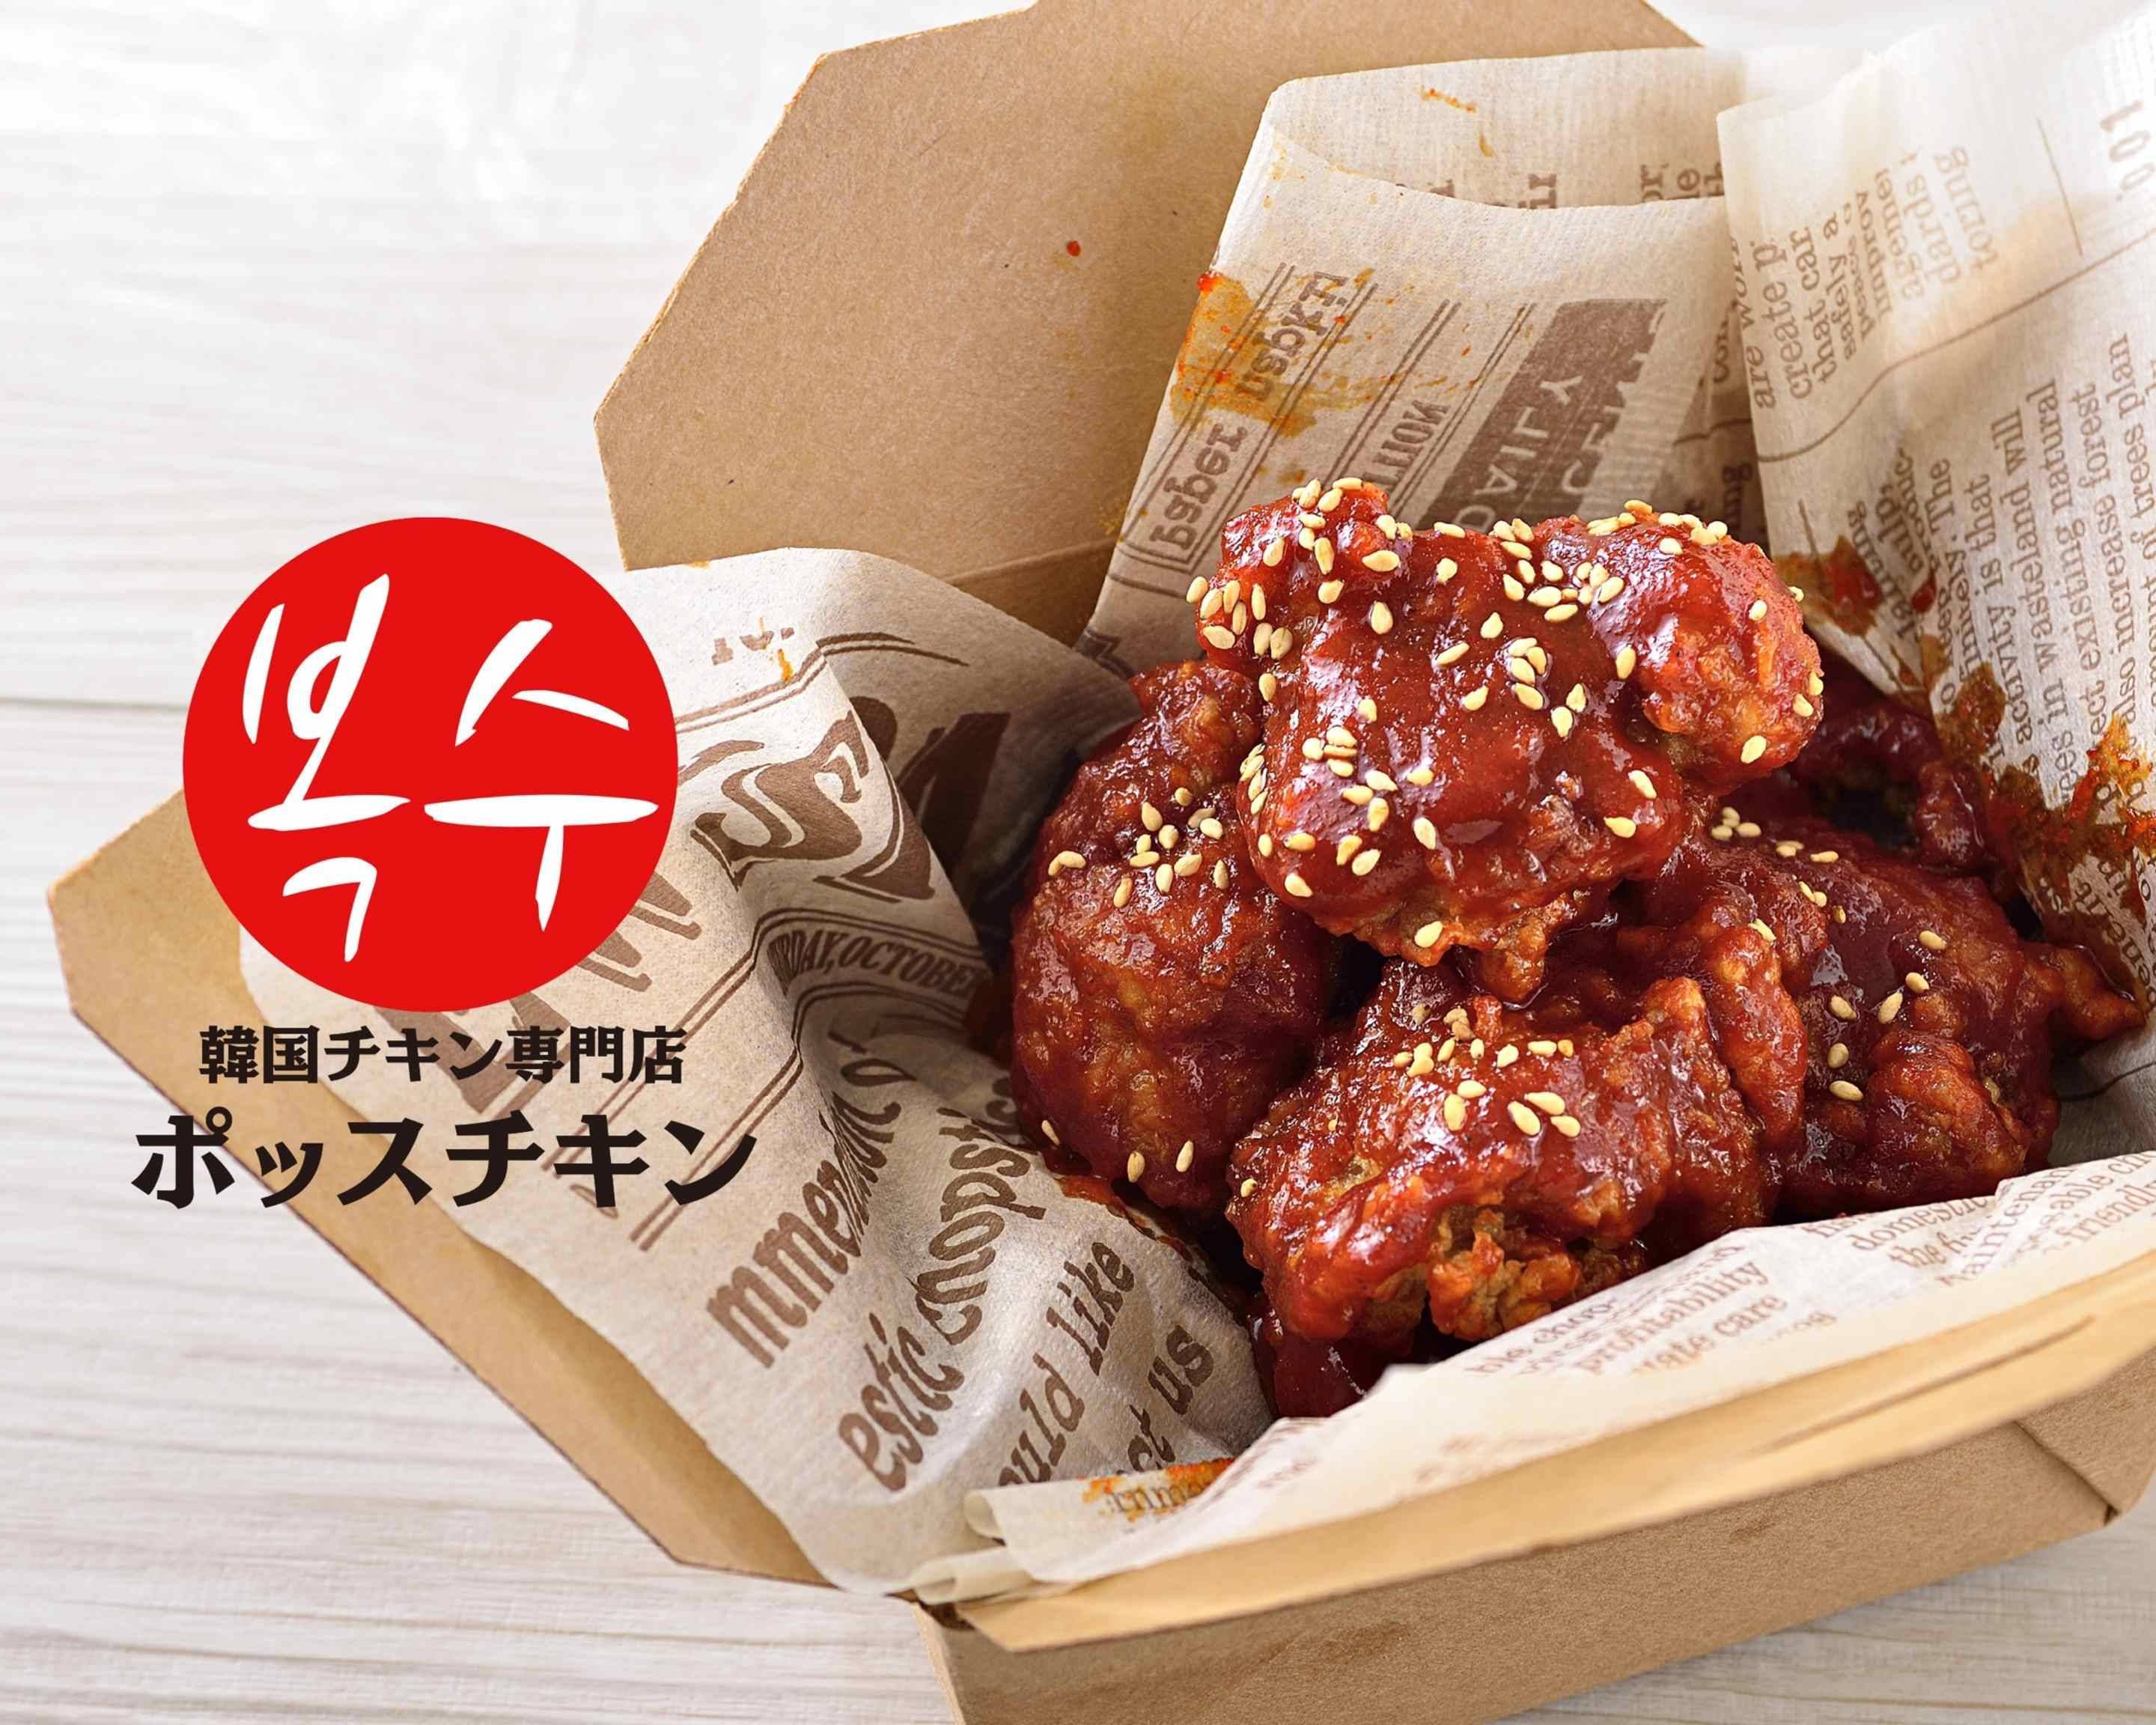 韓国チキン専門店ポッスチキン 用賀店 Korean chicken possu chicken yougatenのメニューを配達| Uber Eats